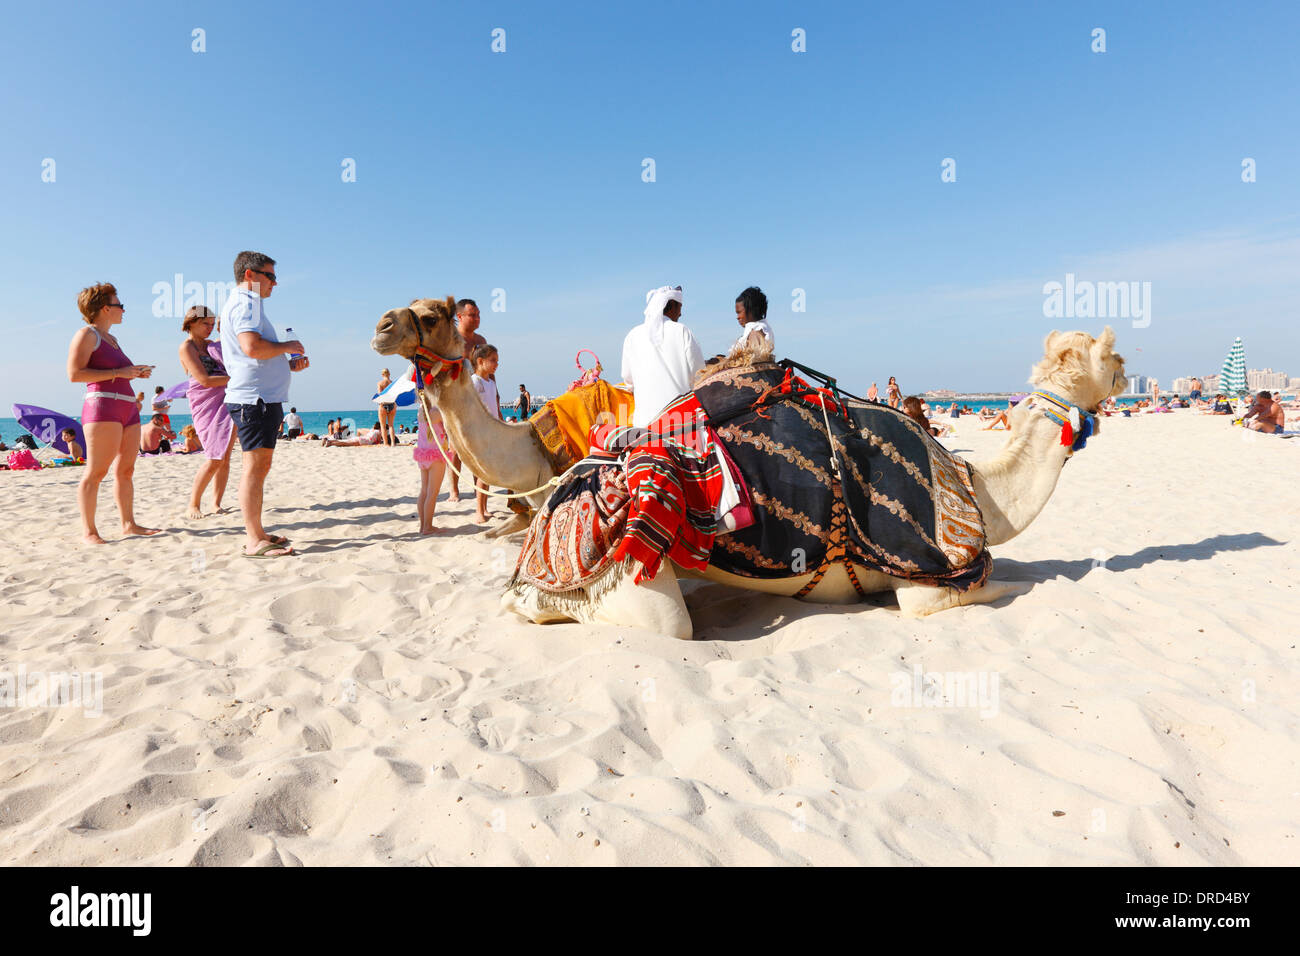 Camel on the Jumeirah beach, Dubai Stock Photo